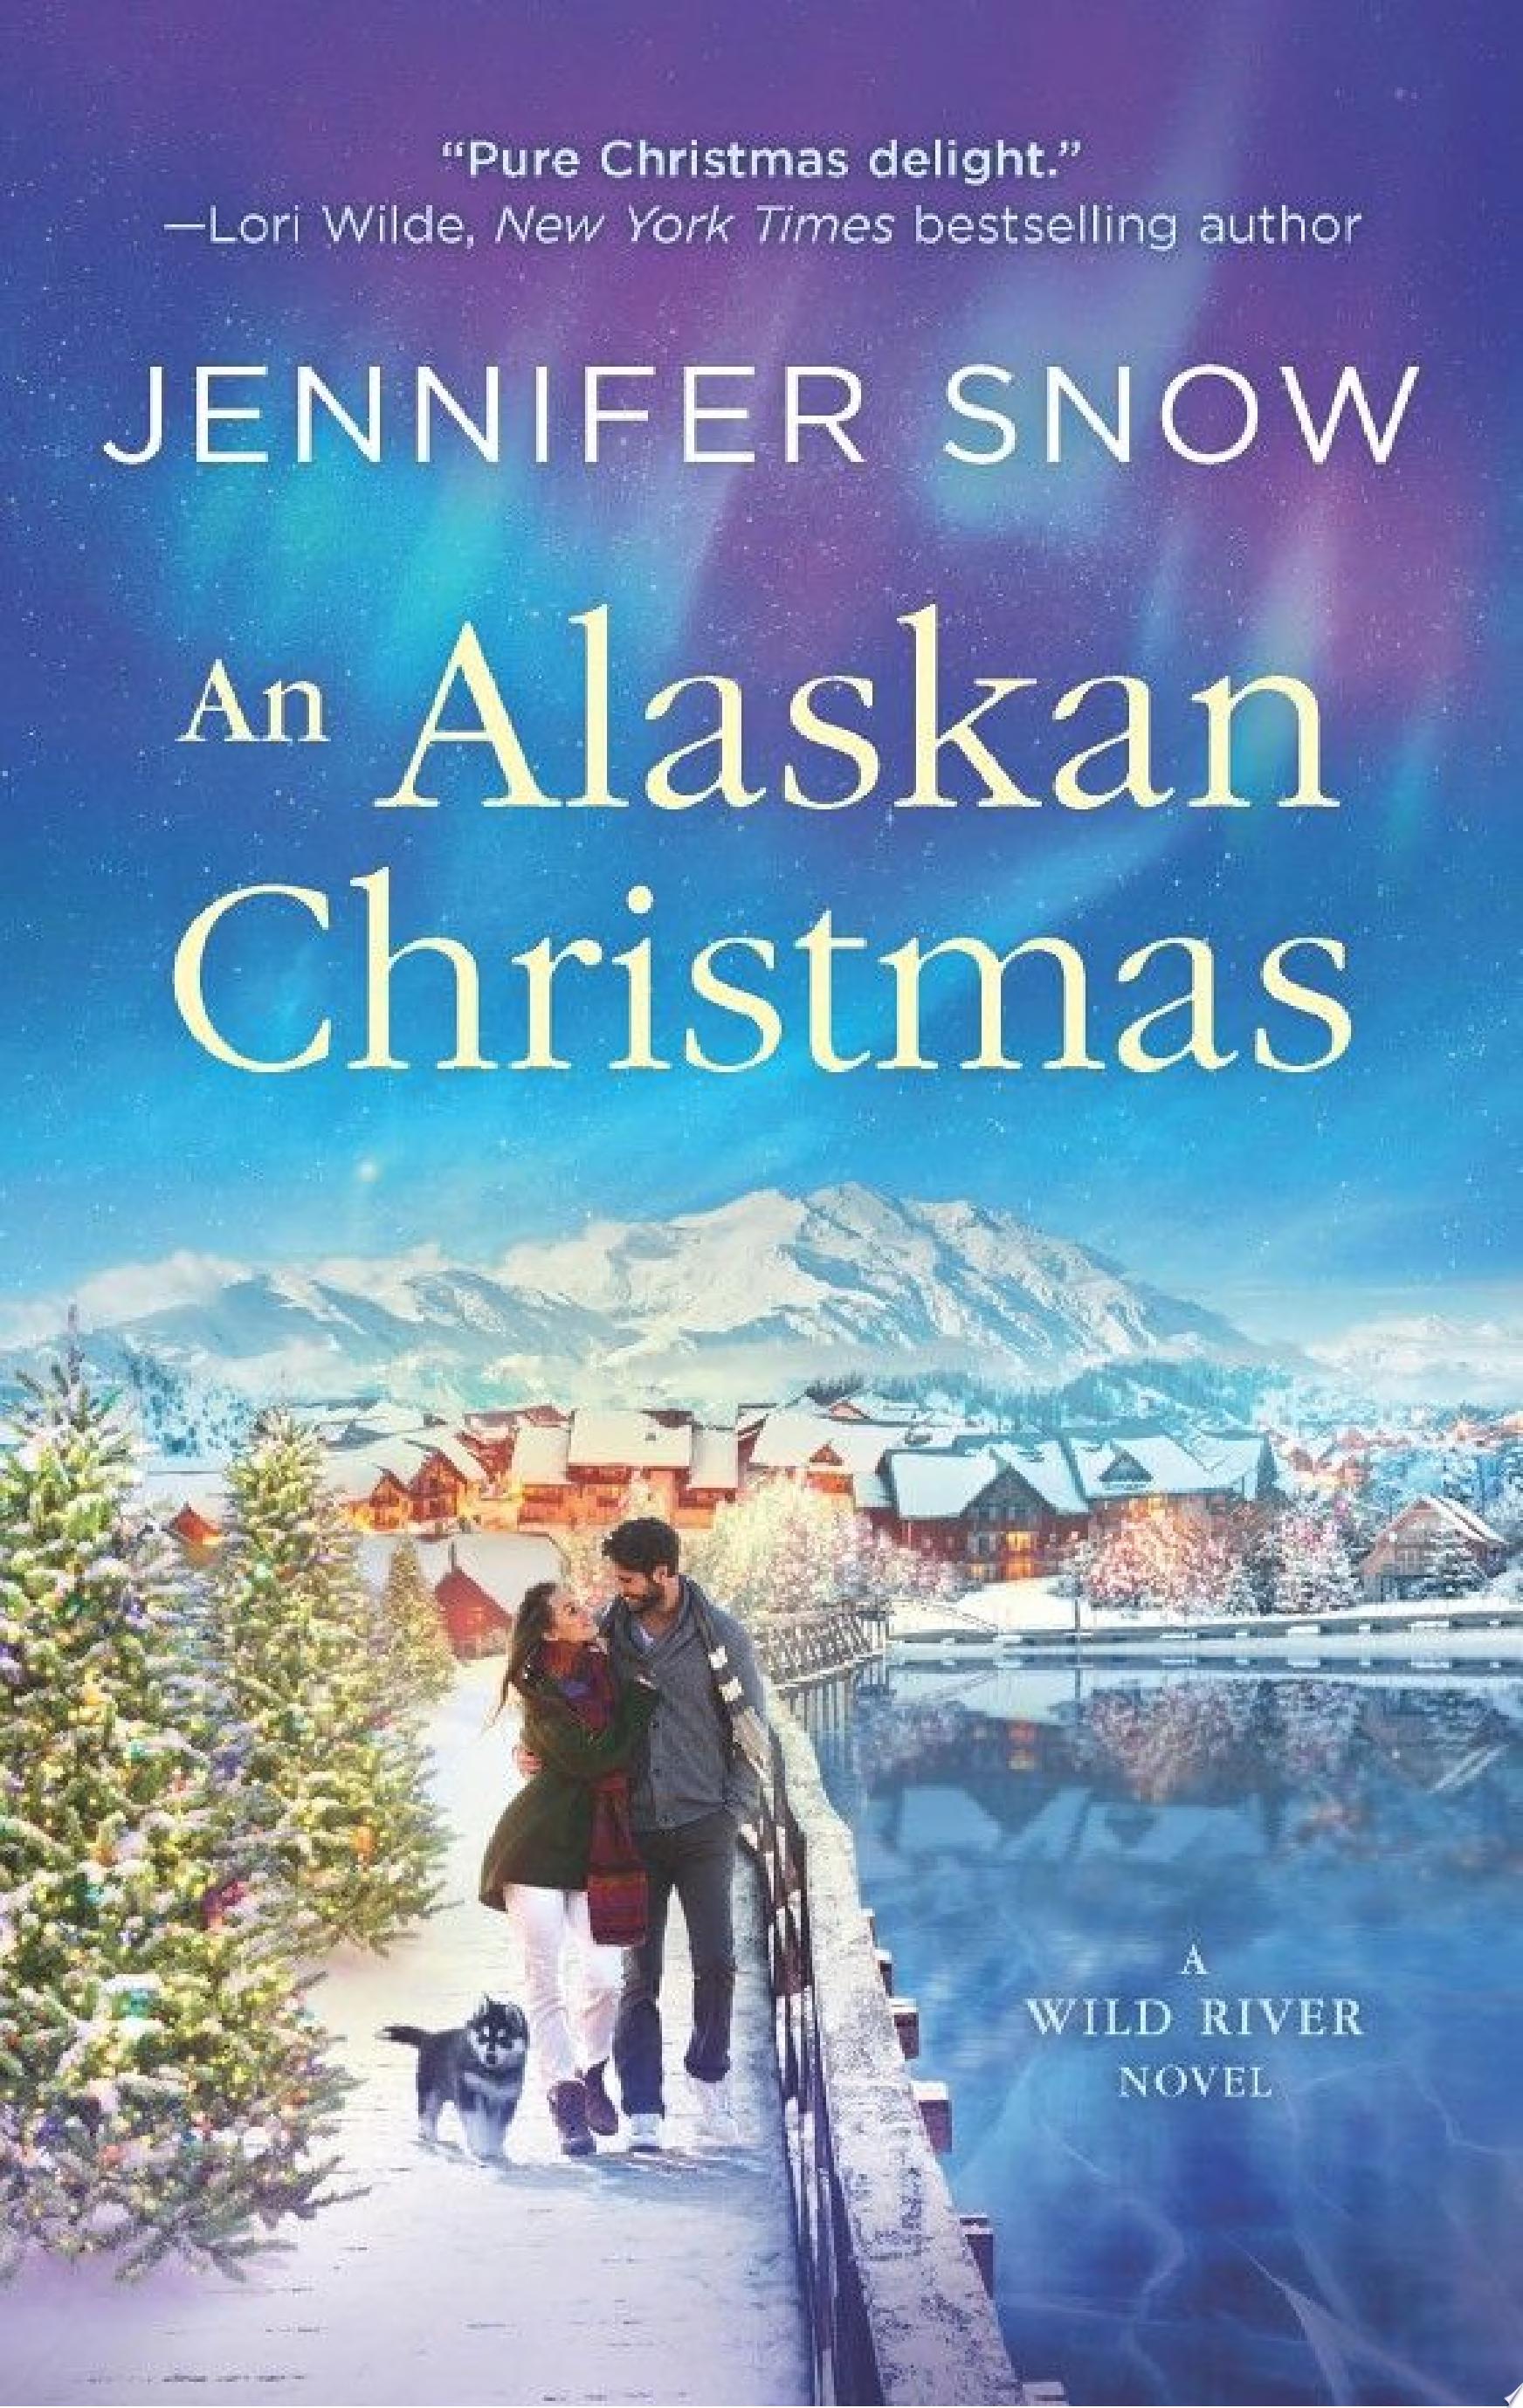 Image for "An Alaskan Christmas"